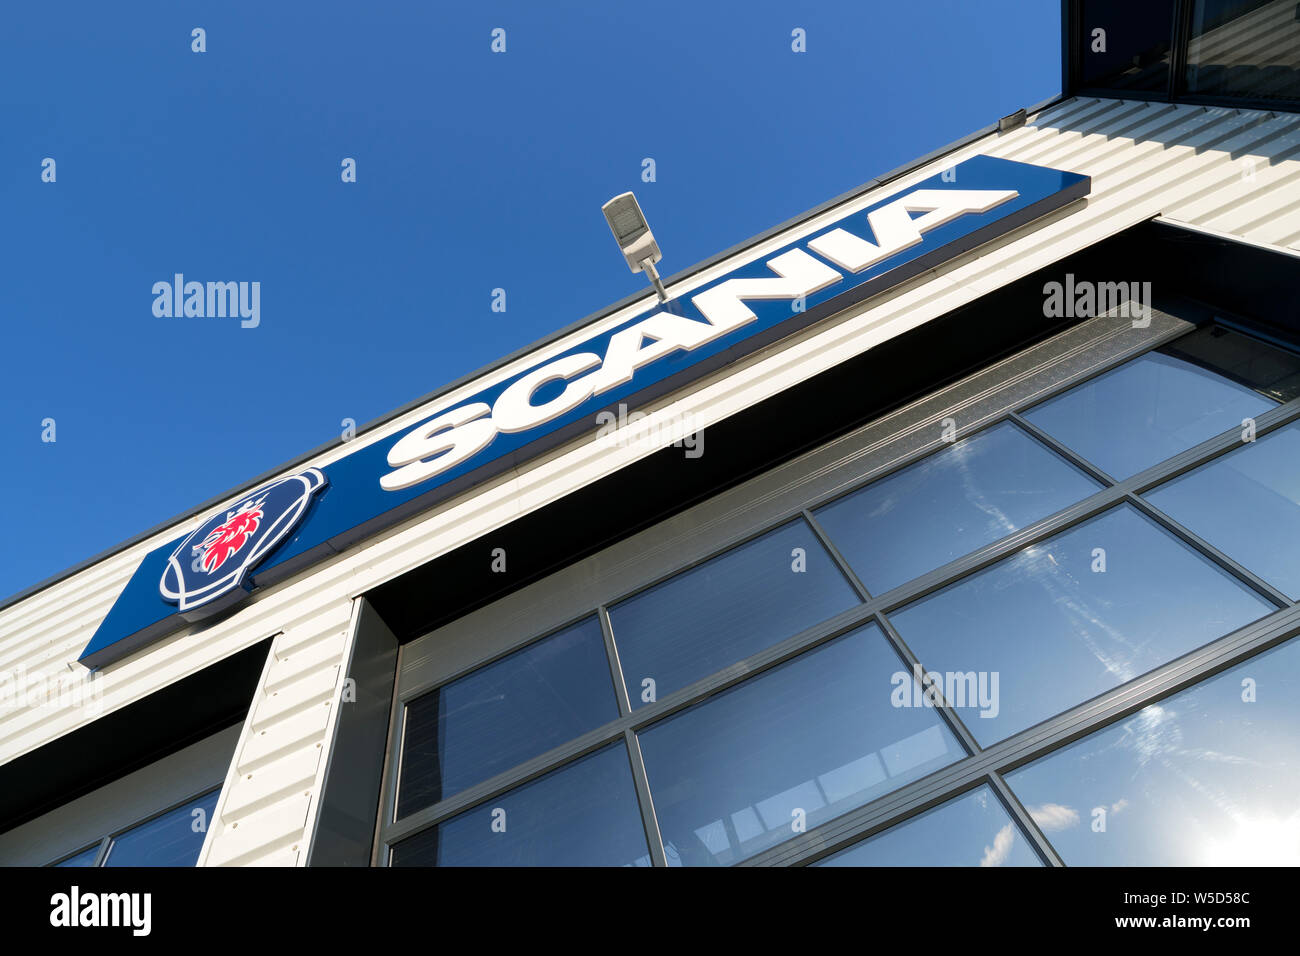 Garage Scania dans Sassenheim, aux Pays-Bas. Scania AB est un fabricant suédois de véhicules commerciaux. Banque D'Images